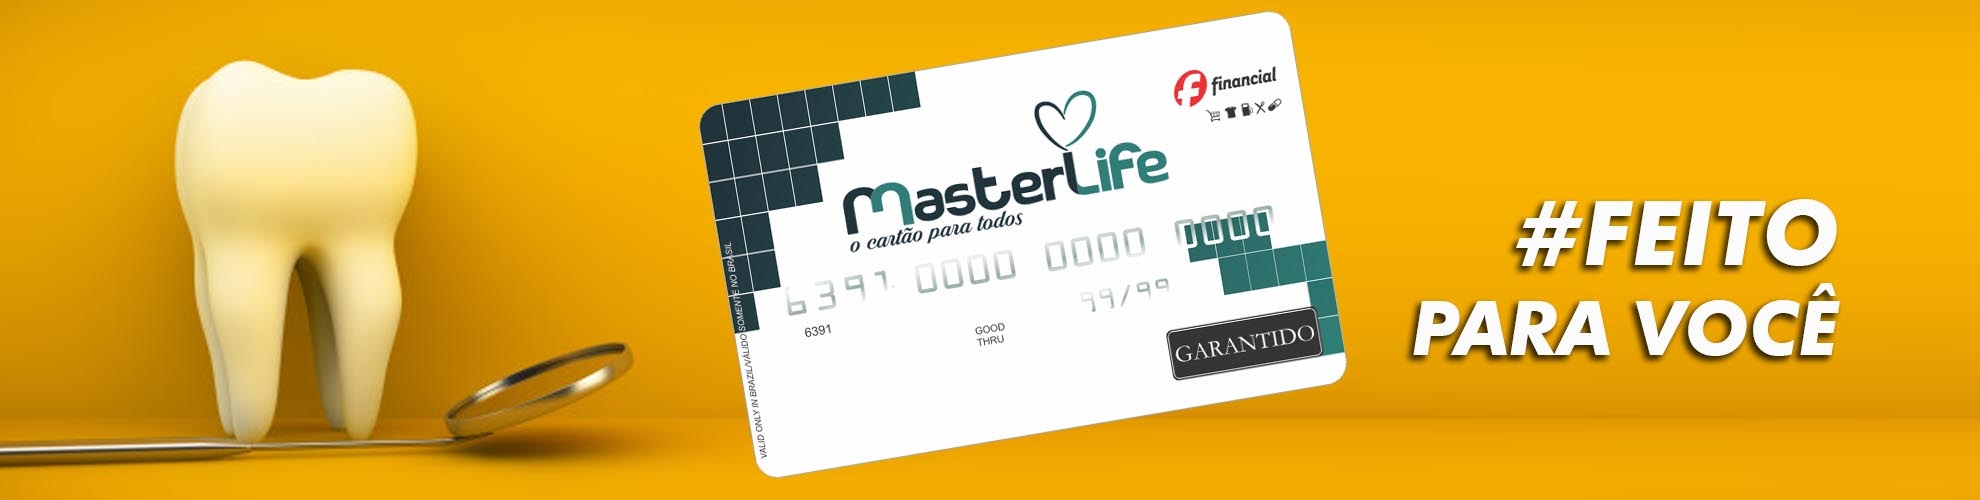 Cartão Master Life - Crédito